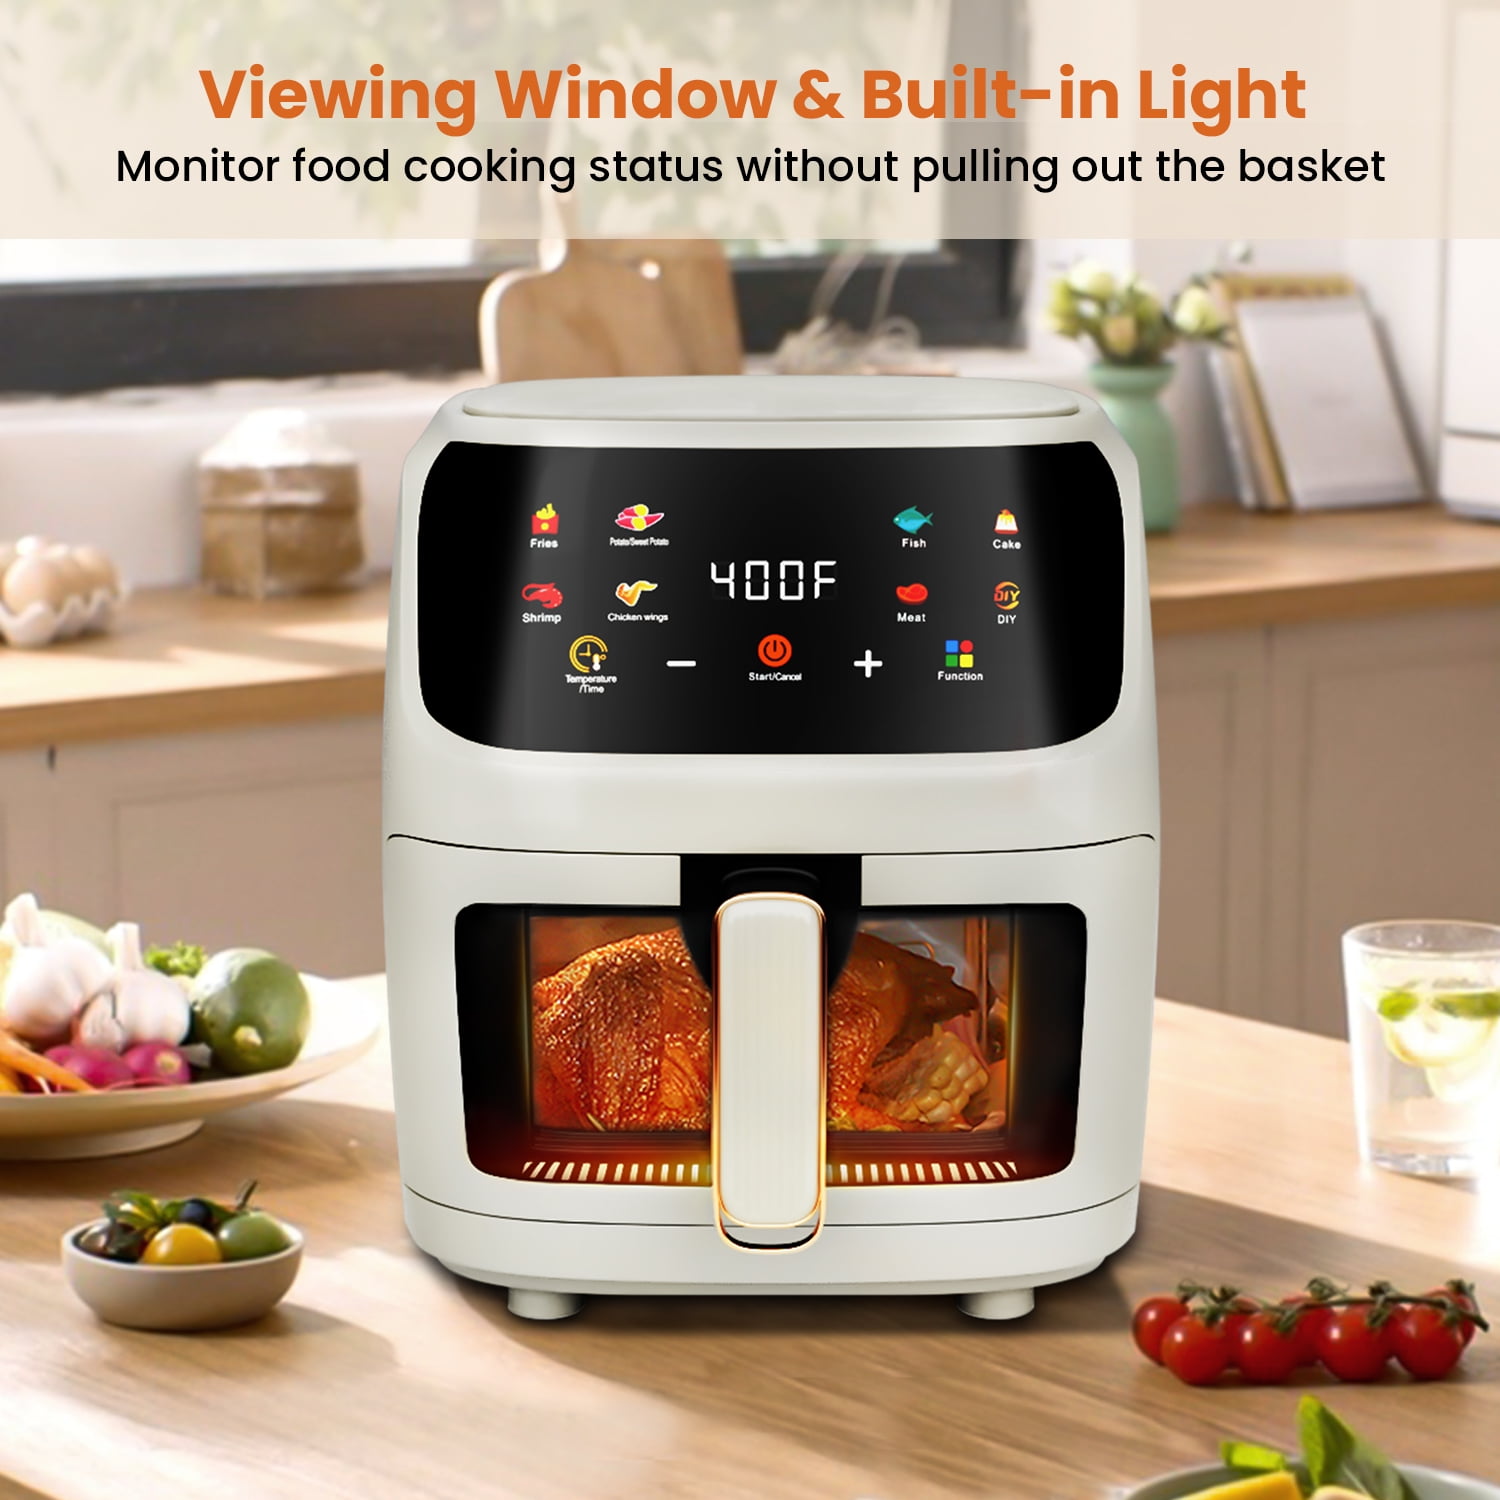 Alivio Smart 4 in 1 1700W Digital Air Fryer With Viewcook Window